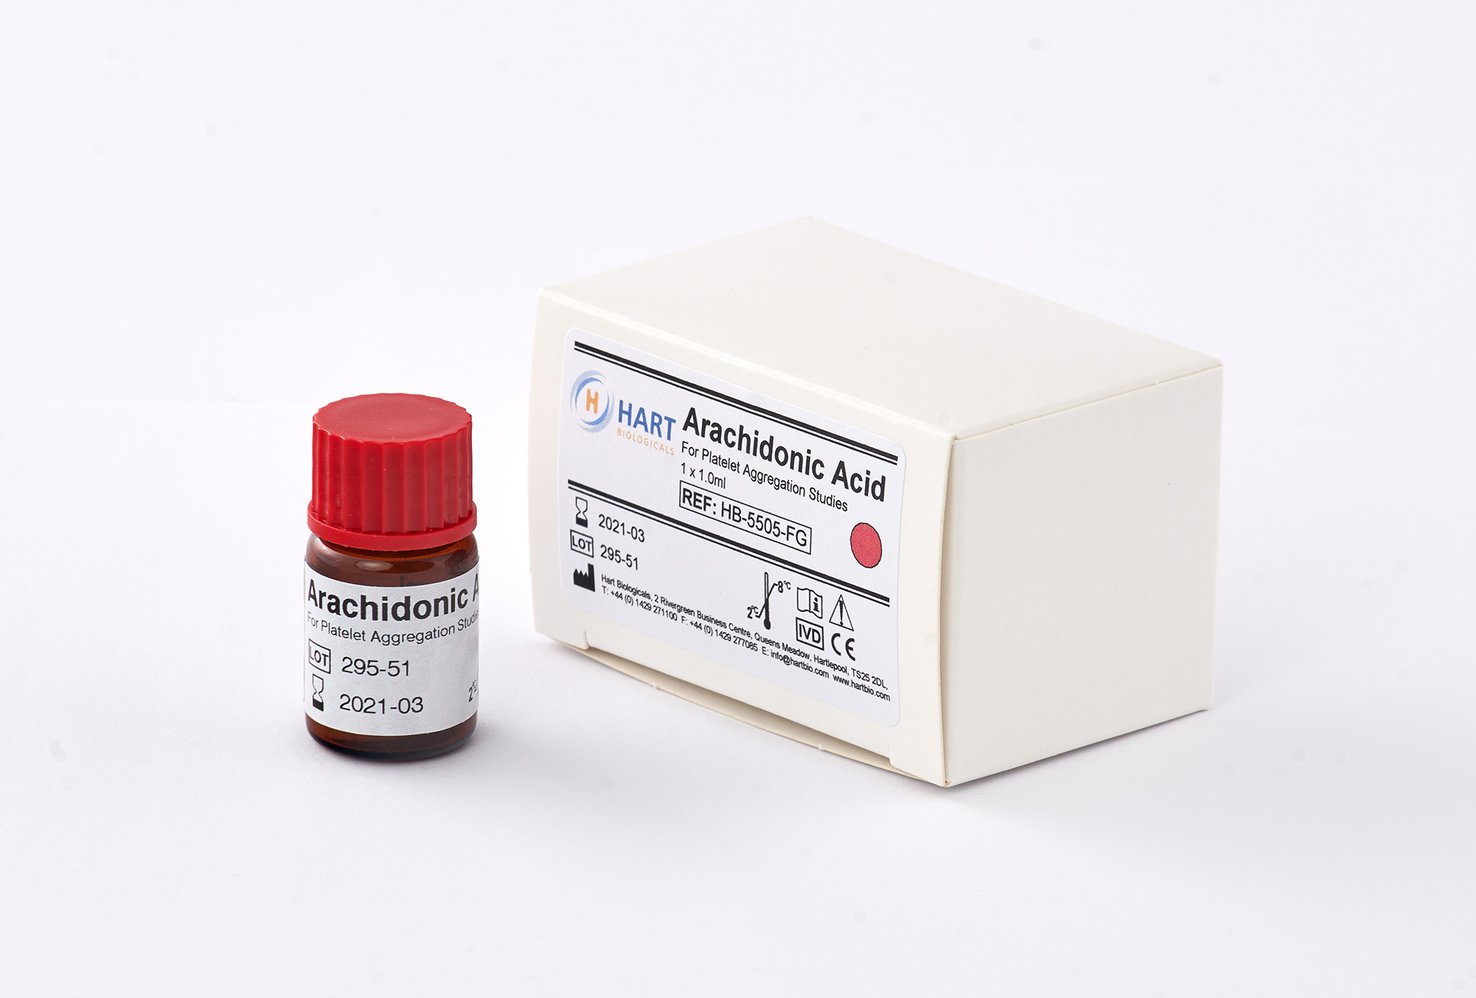 Arachidonic Acid 5mg/ml - 1 x 1.0ml